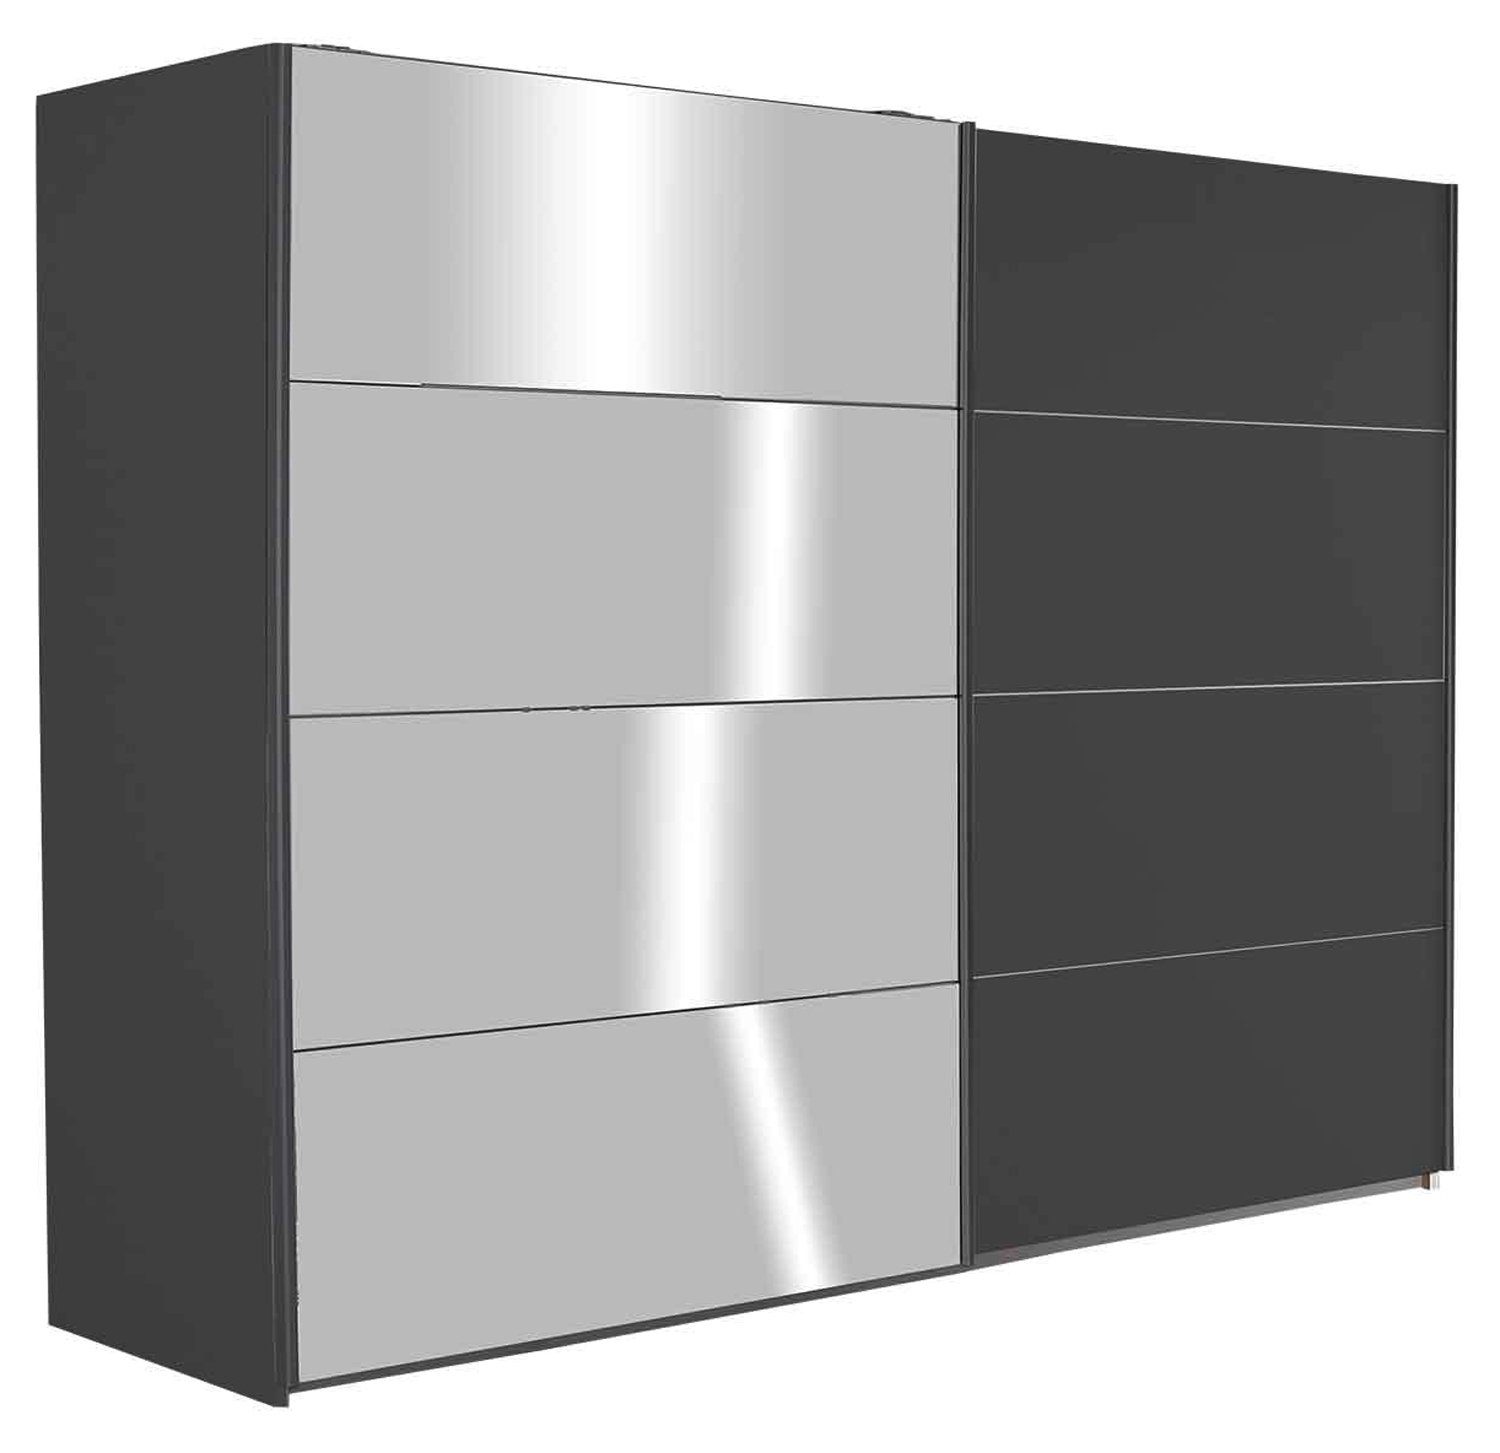 rauch Schwebetürenschrank QUADRA, B 271 cm x H 210 cm, Grau Metallic, 3  Türen, mit Spiegel